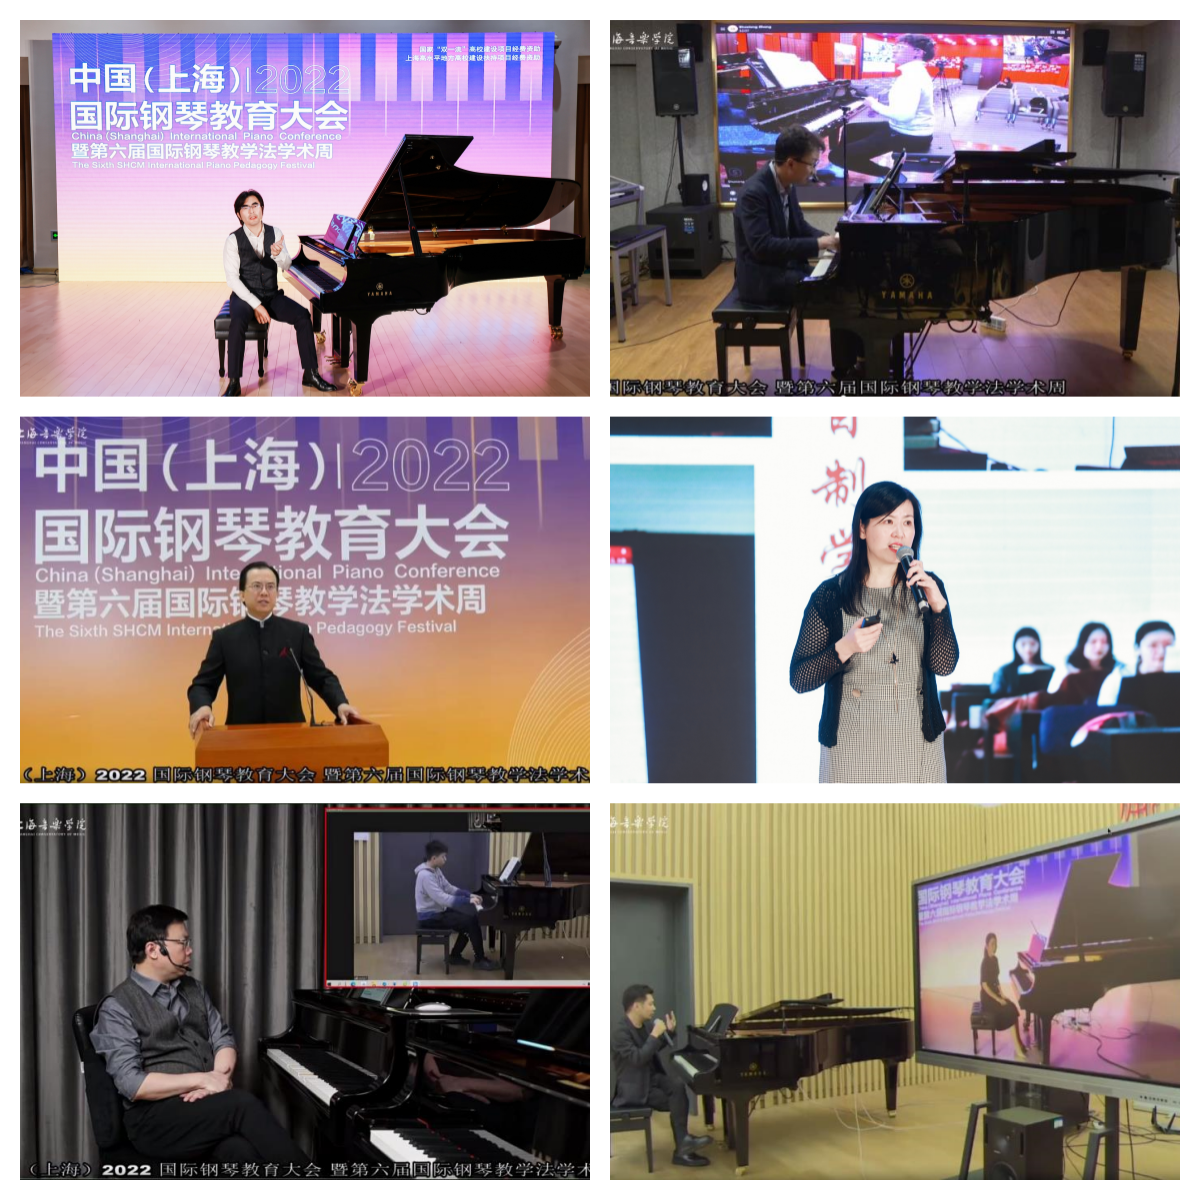 212万人次观摩, 中国钢琴教育大会让中国声音走向世界